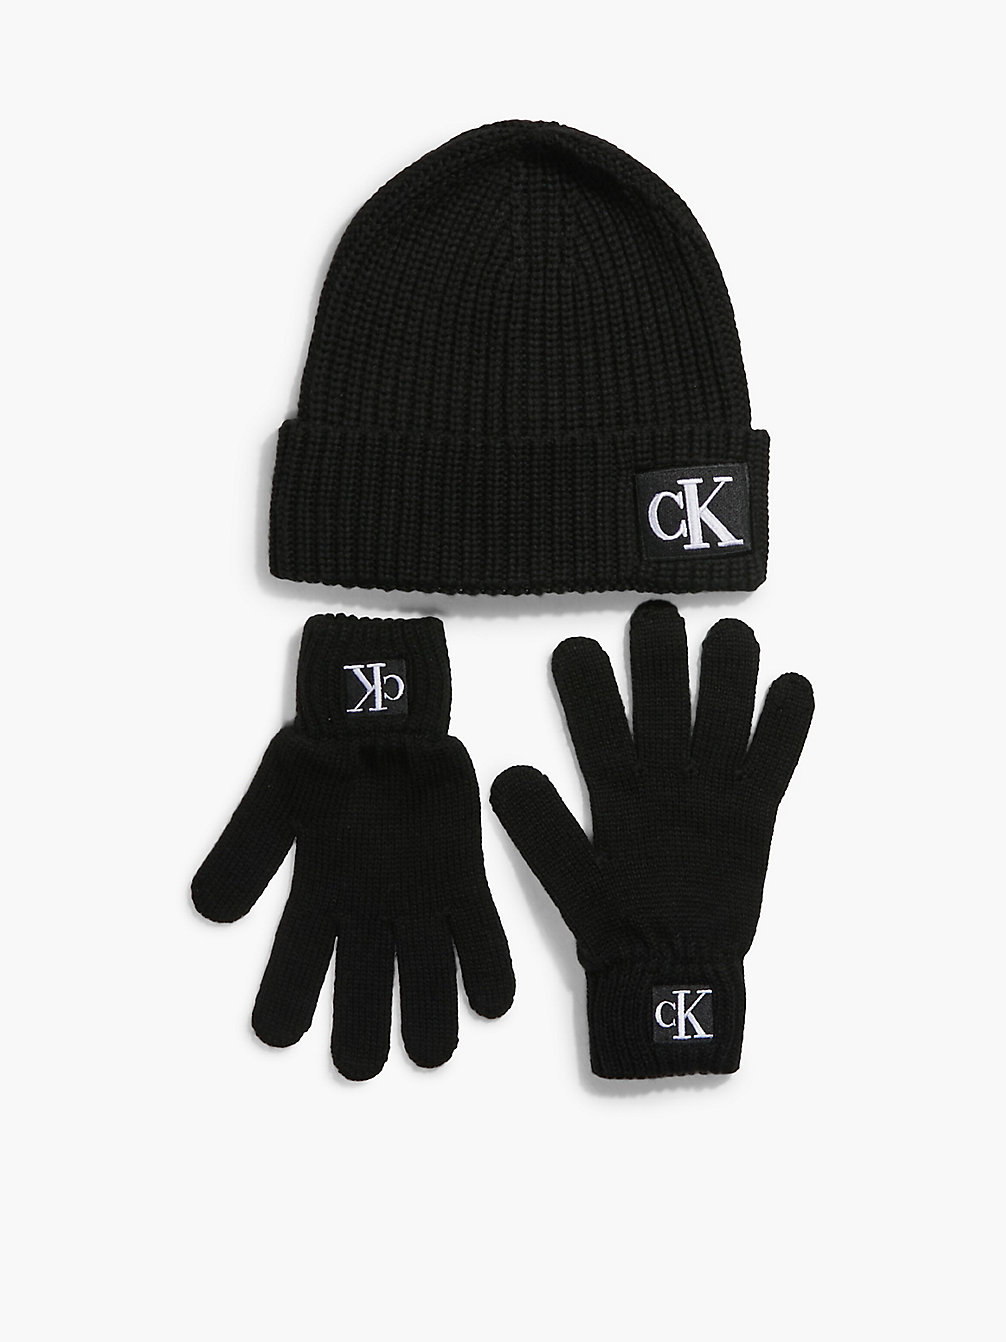 CK BLACK Unisex Beanie And Gloves Set undefined kids unisex Calvin Klein